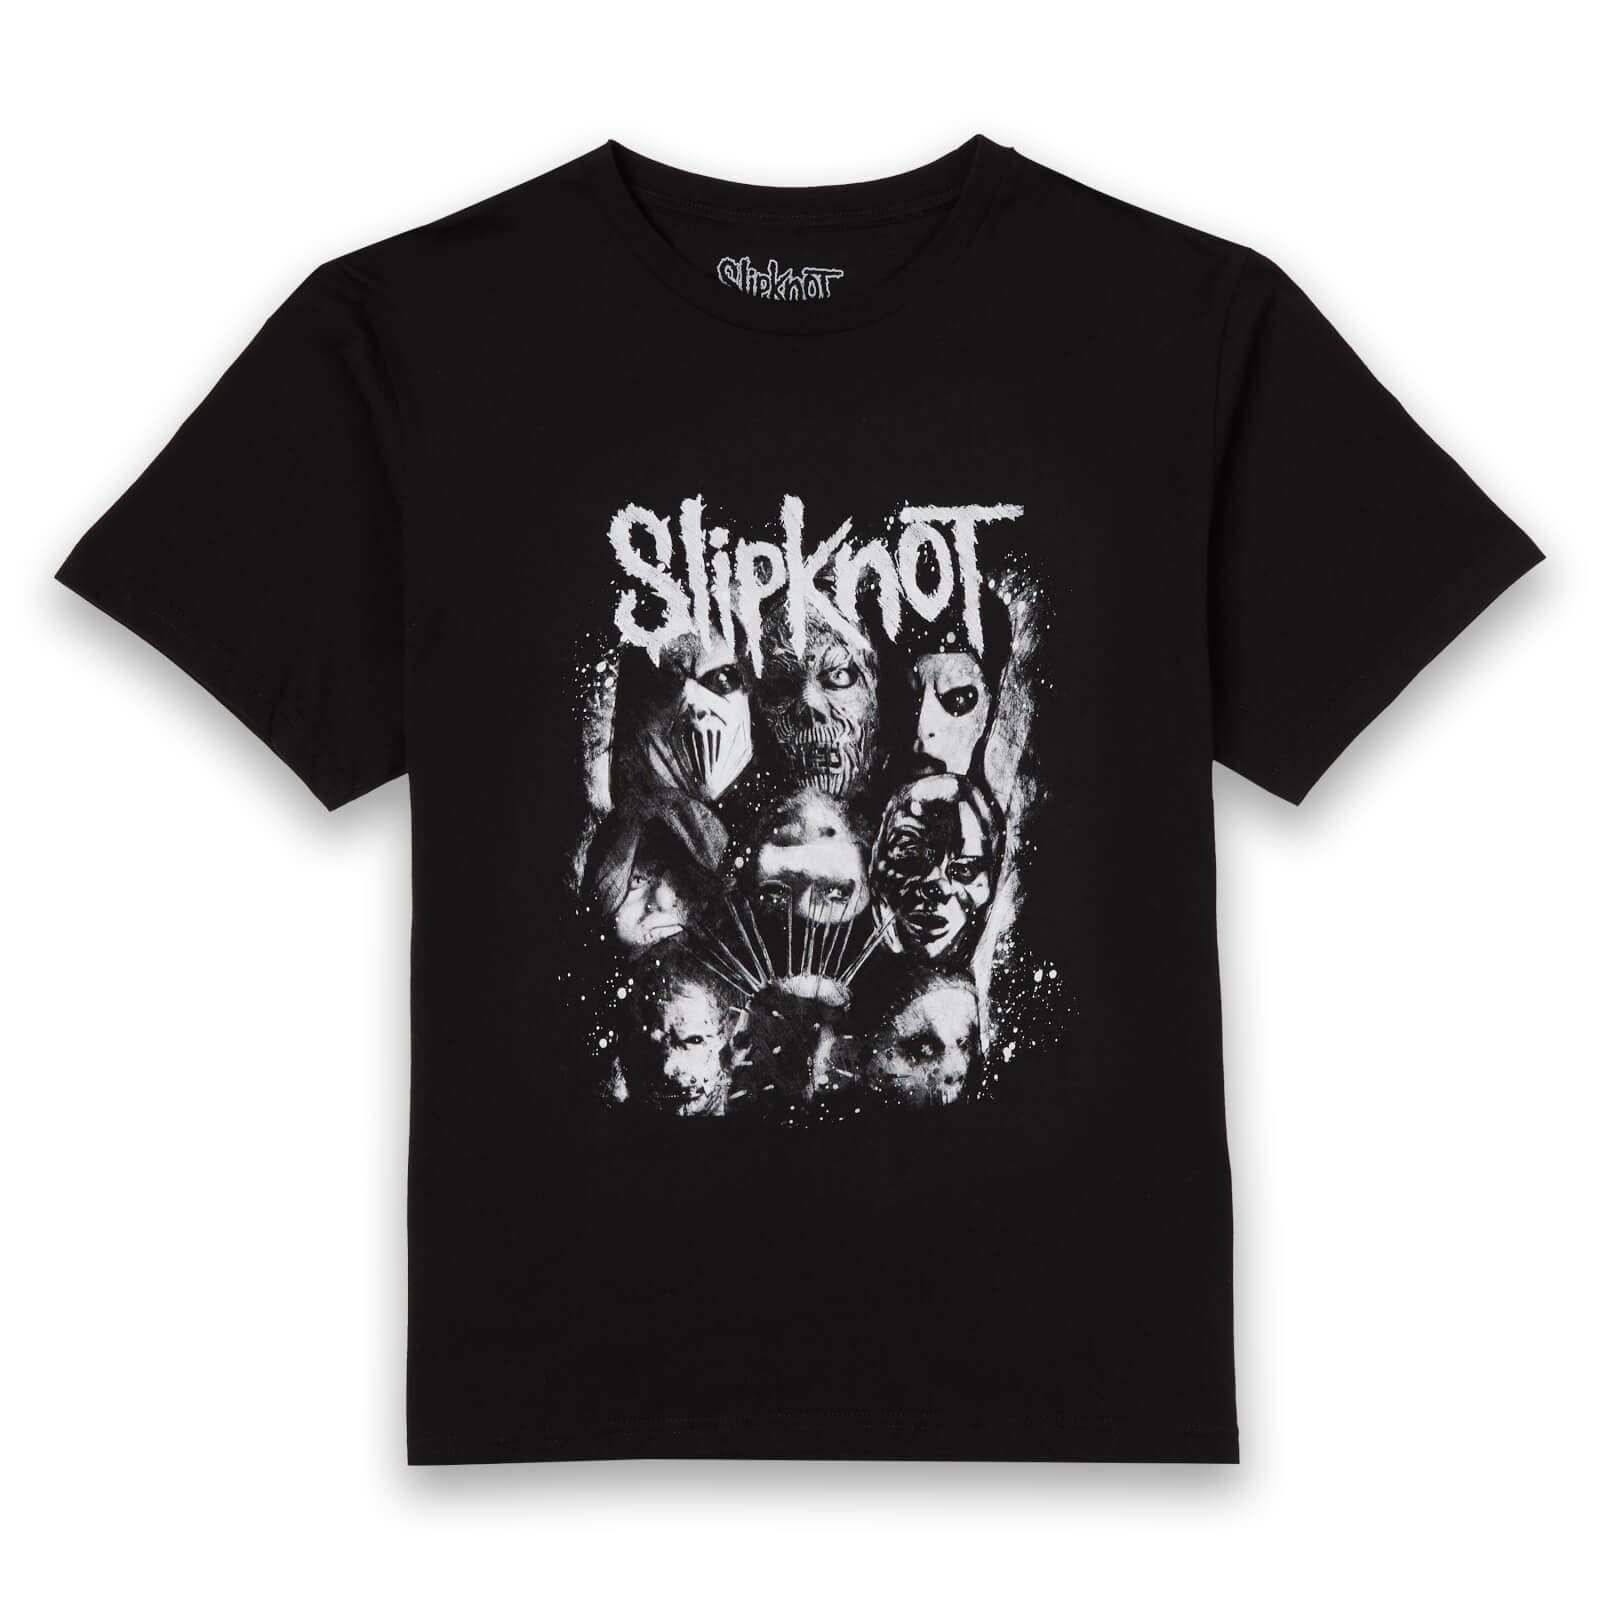 Slipknot Splatter T-Shirt - Black - M